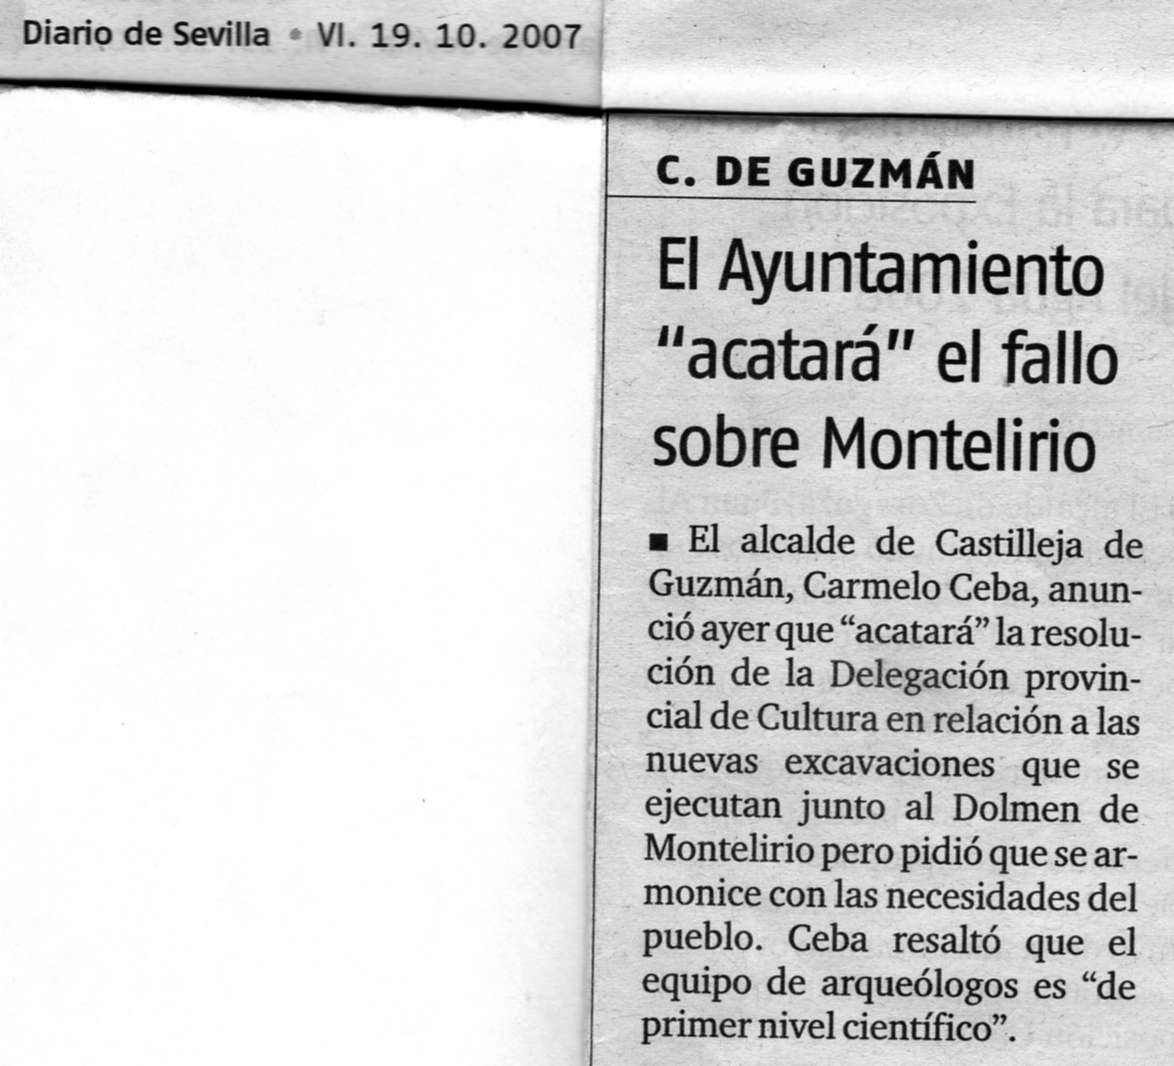 [AYUNTAMIENTO+ACATARÃ +EL+FALLO+DE+MONTELIRIO+191007.jpg]